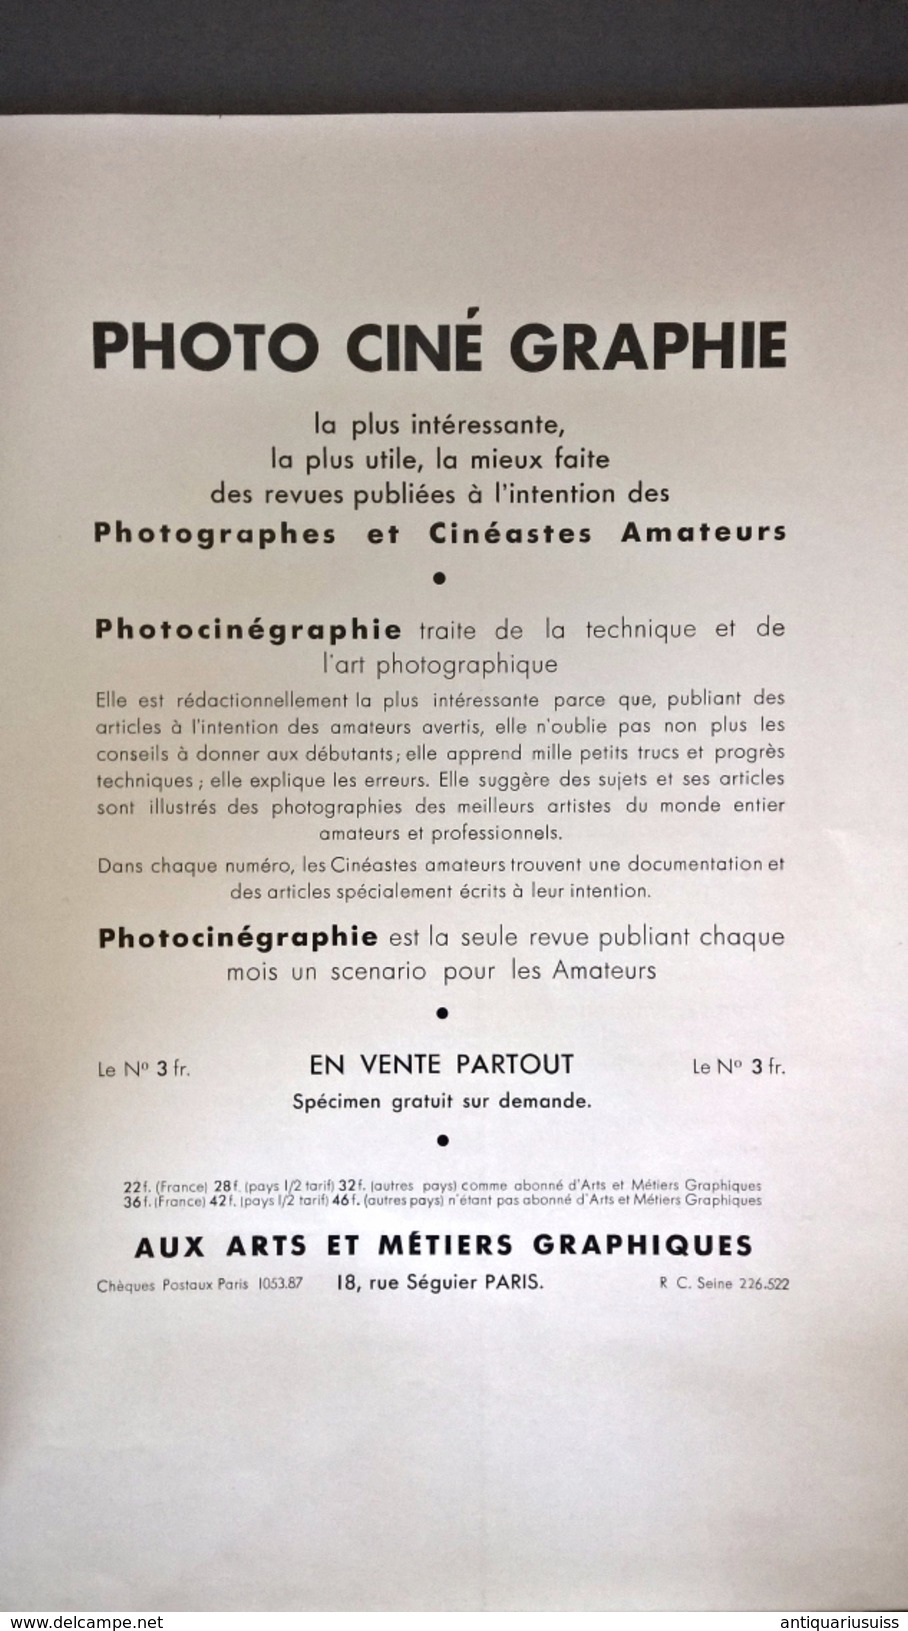 1934 - ARTS & MÉTIERS GRAPHIQUES Paris 43 - Charles Peignot - André Lejard - Art